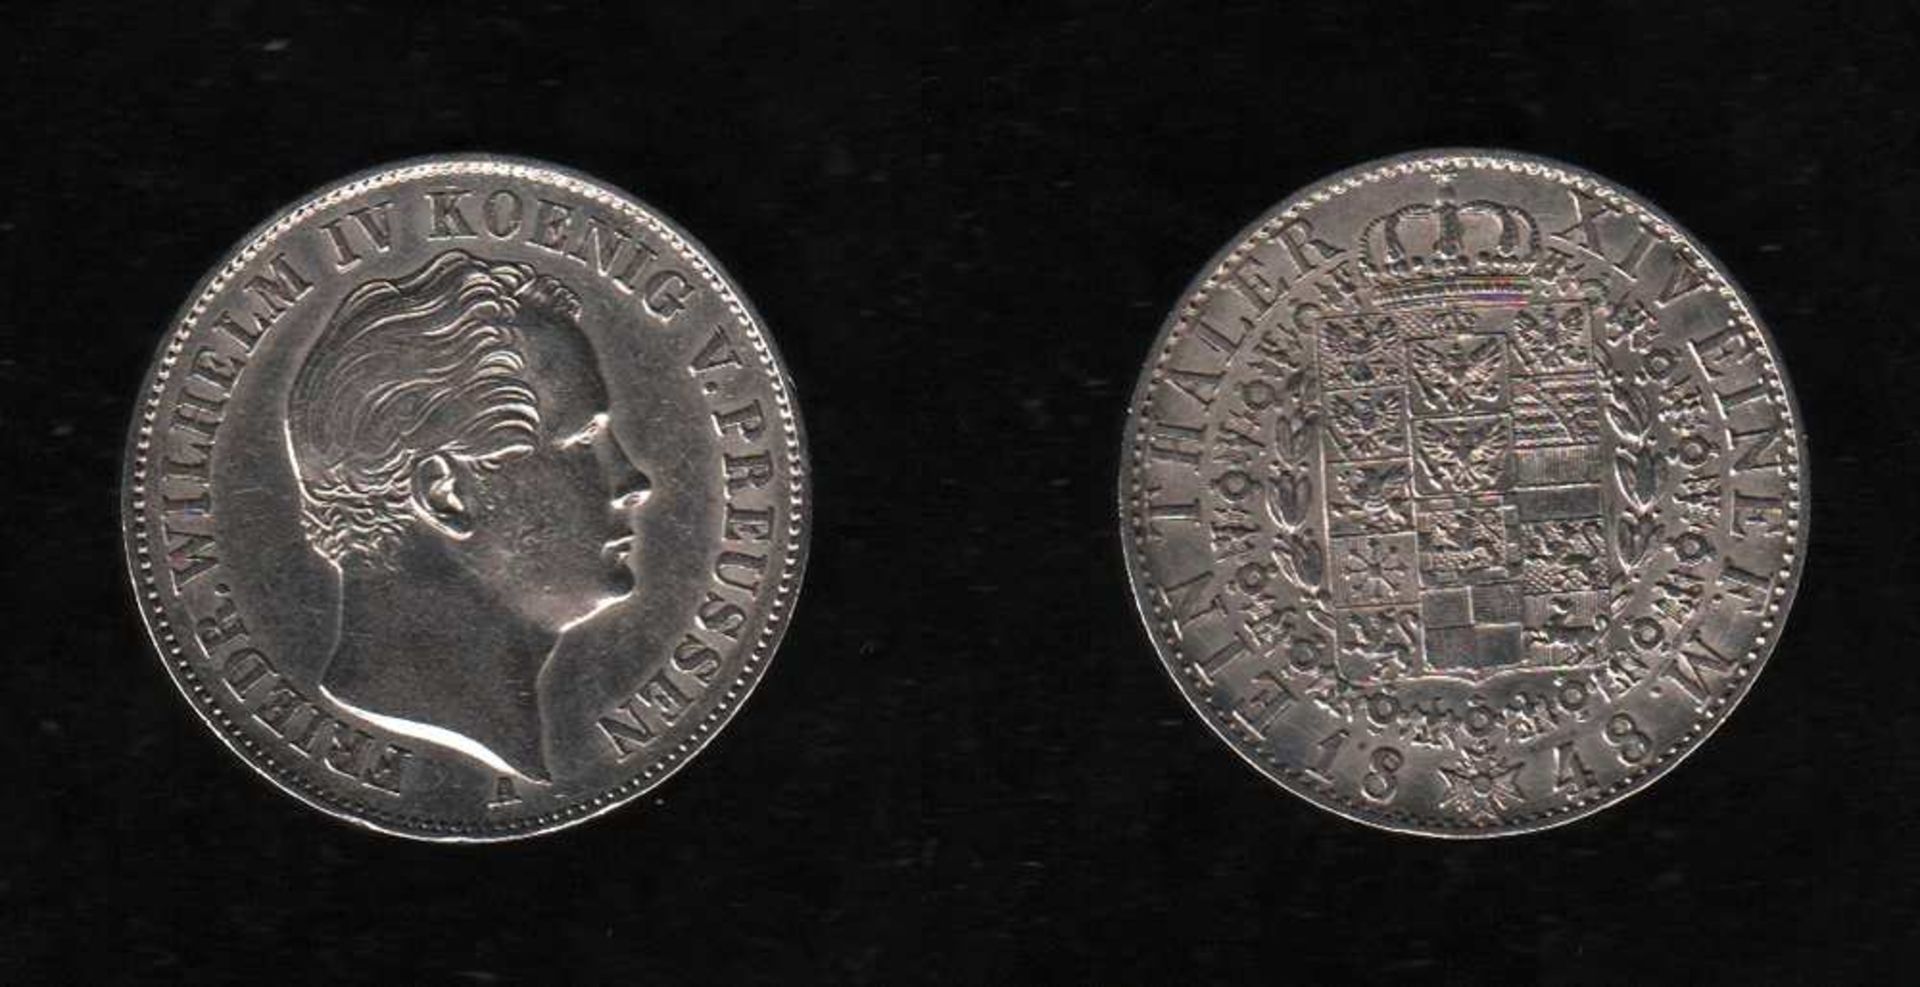 # Preußen. Silbermünze. 1 Taler. Friedrich Wilhelm IV., König von Preußen (1795 - 1861). A 1848.